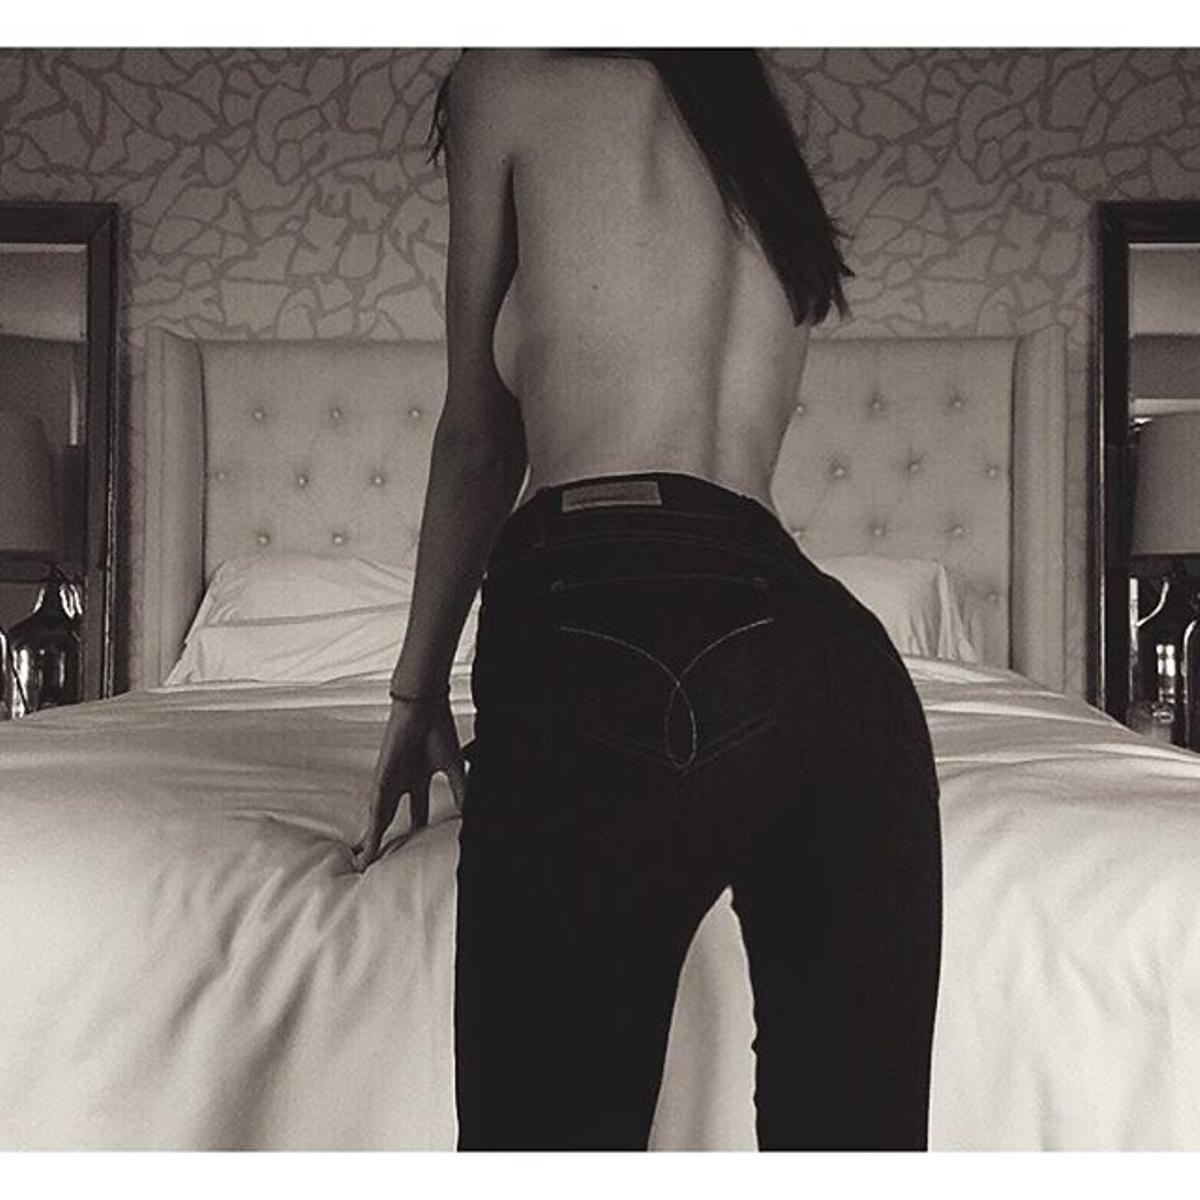 Las fotos más polémicas en Instagram de Kendall Jenner